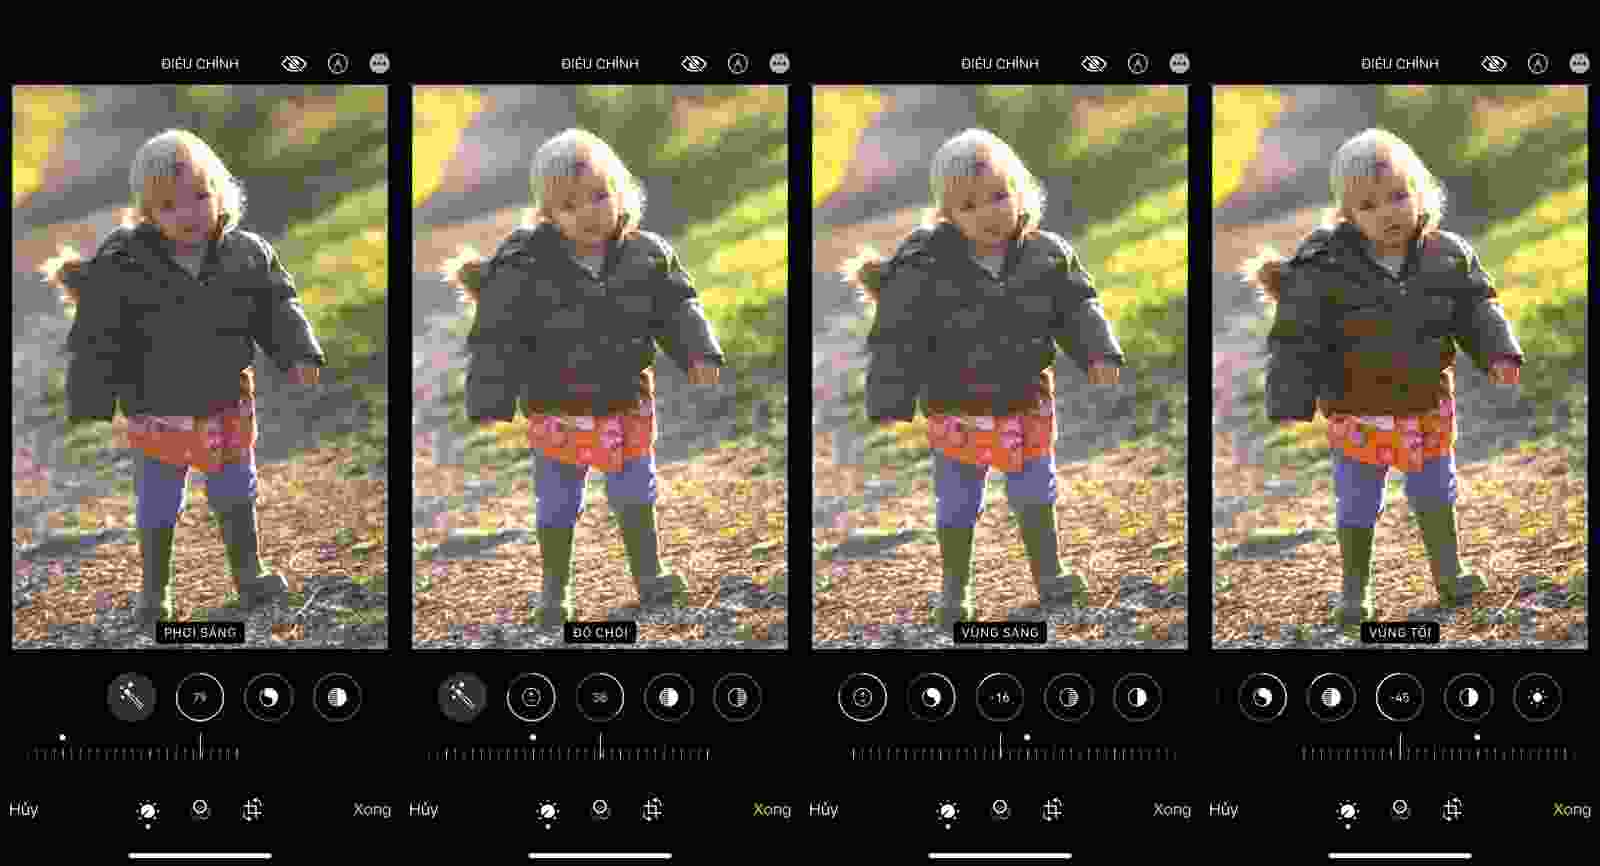 Chỉnh màu trên iPhone: Bạn muốn tìm hiểu cách chỉnh màu hoàn hảo cho những bức ảnh của mình? Với công nghệ chỉnh màu trên iPhone, bạn có thể dễ dàng chỉnh sửa màu sắc, tăng độ sáng tối hoặc chỉnh độ tương phản để tạo nên những bức ảnh sắc nét, đẹp mắt. Hãy cùng khám phá công nghệ này ngay hôm nay!